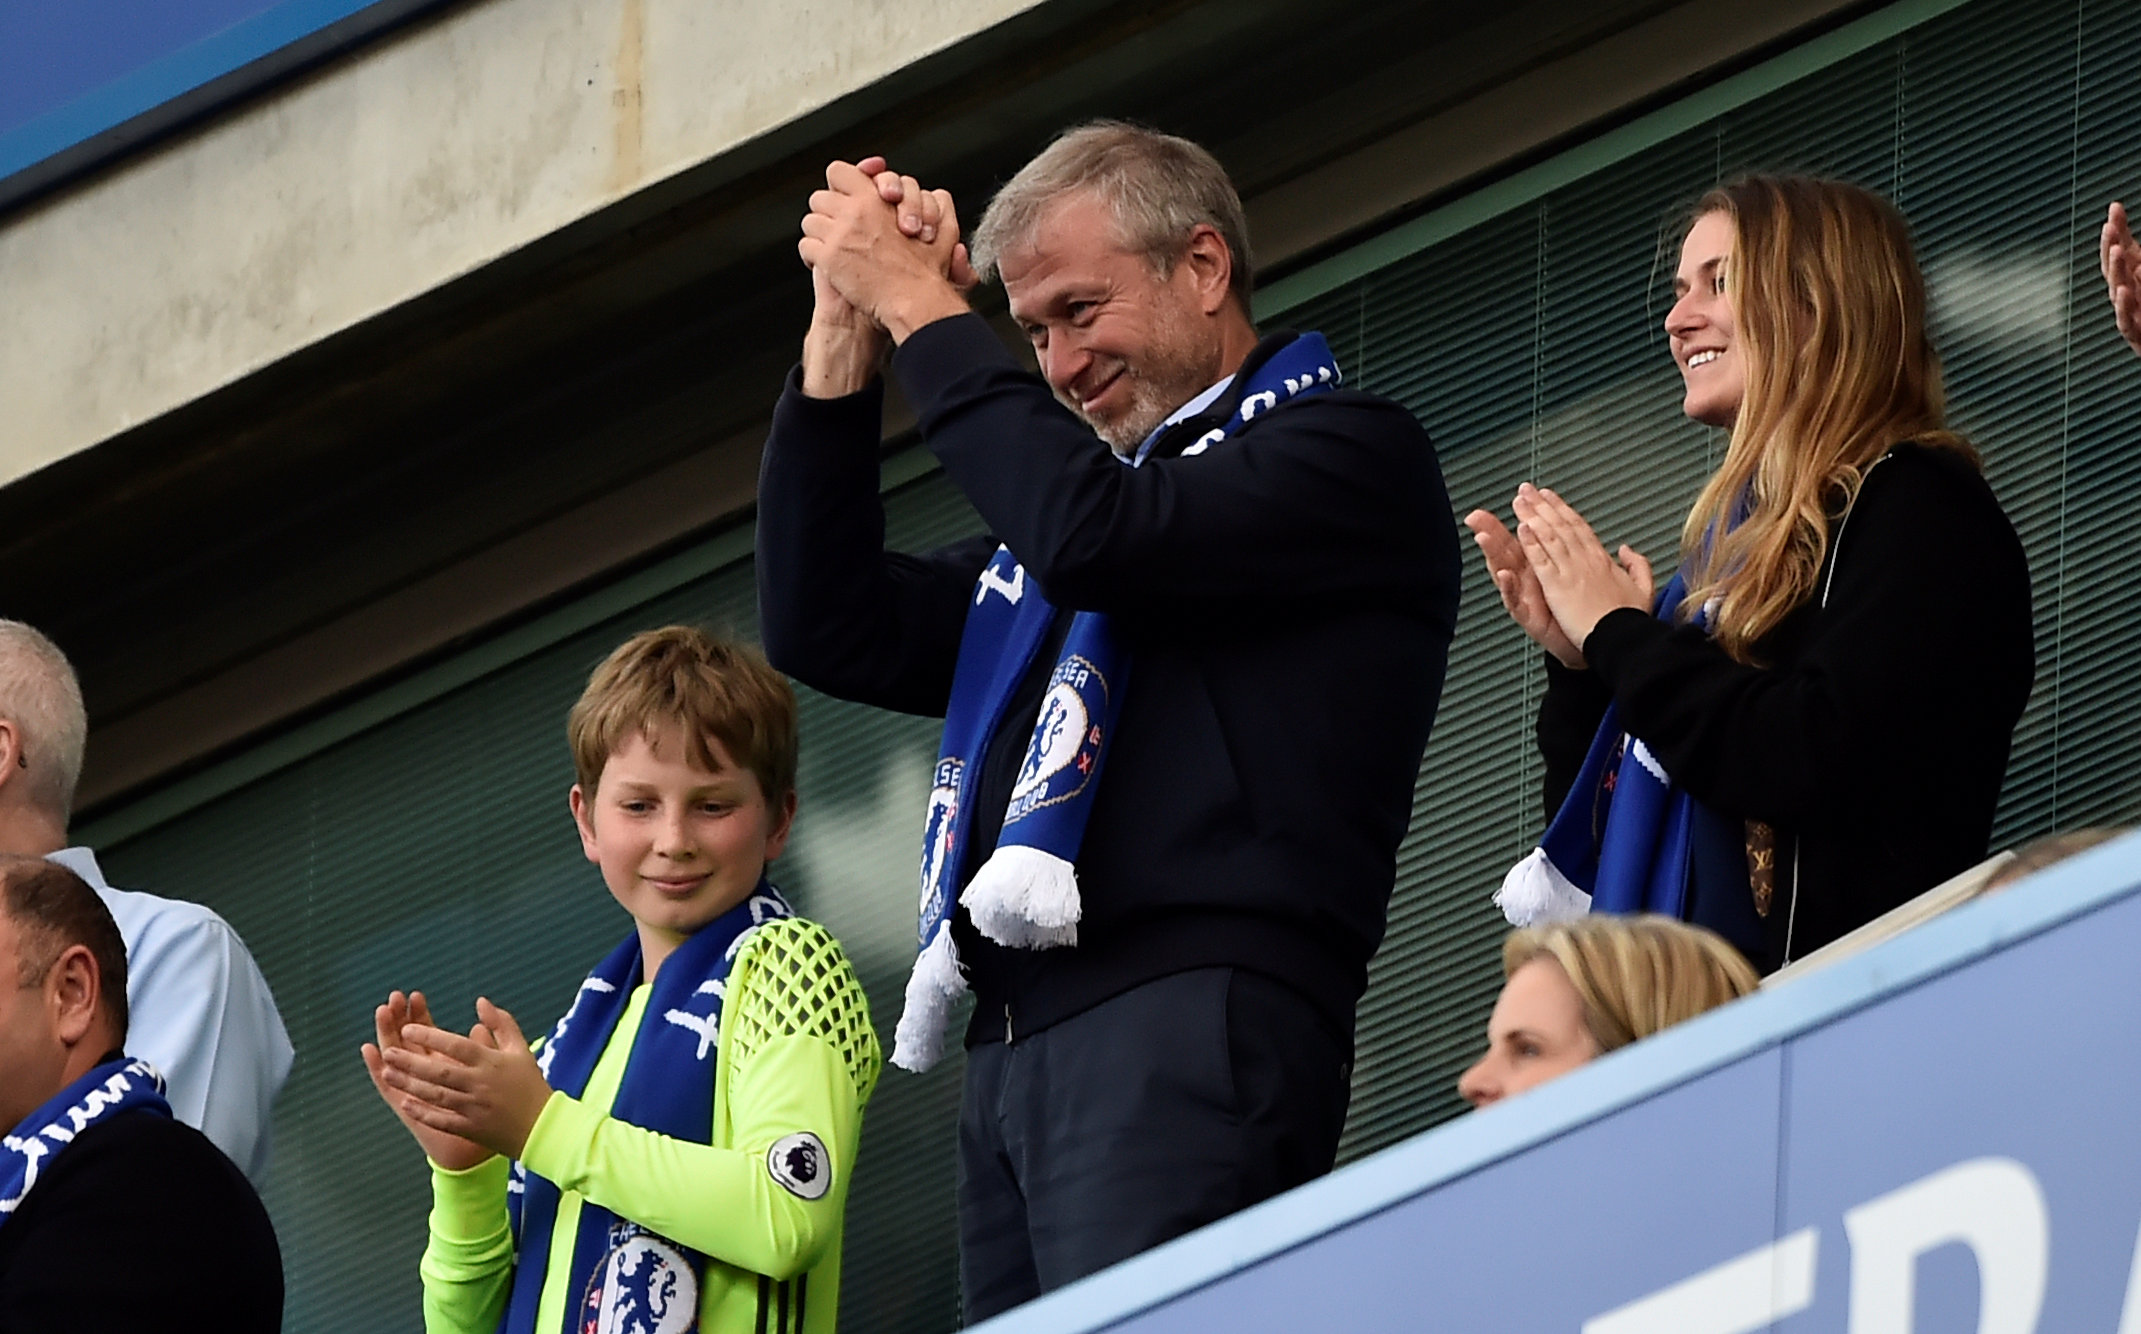 Roman Abramovich, dueño del equipo de fútbol Chelsea, aplaudido por los fanáticos después de ganar la Premier League en 2017. Reuters / Hannah McKay Livepic.